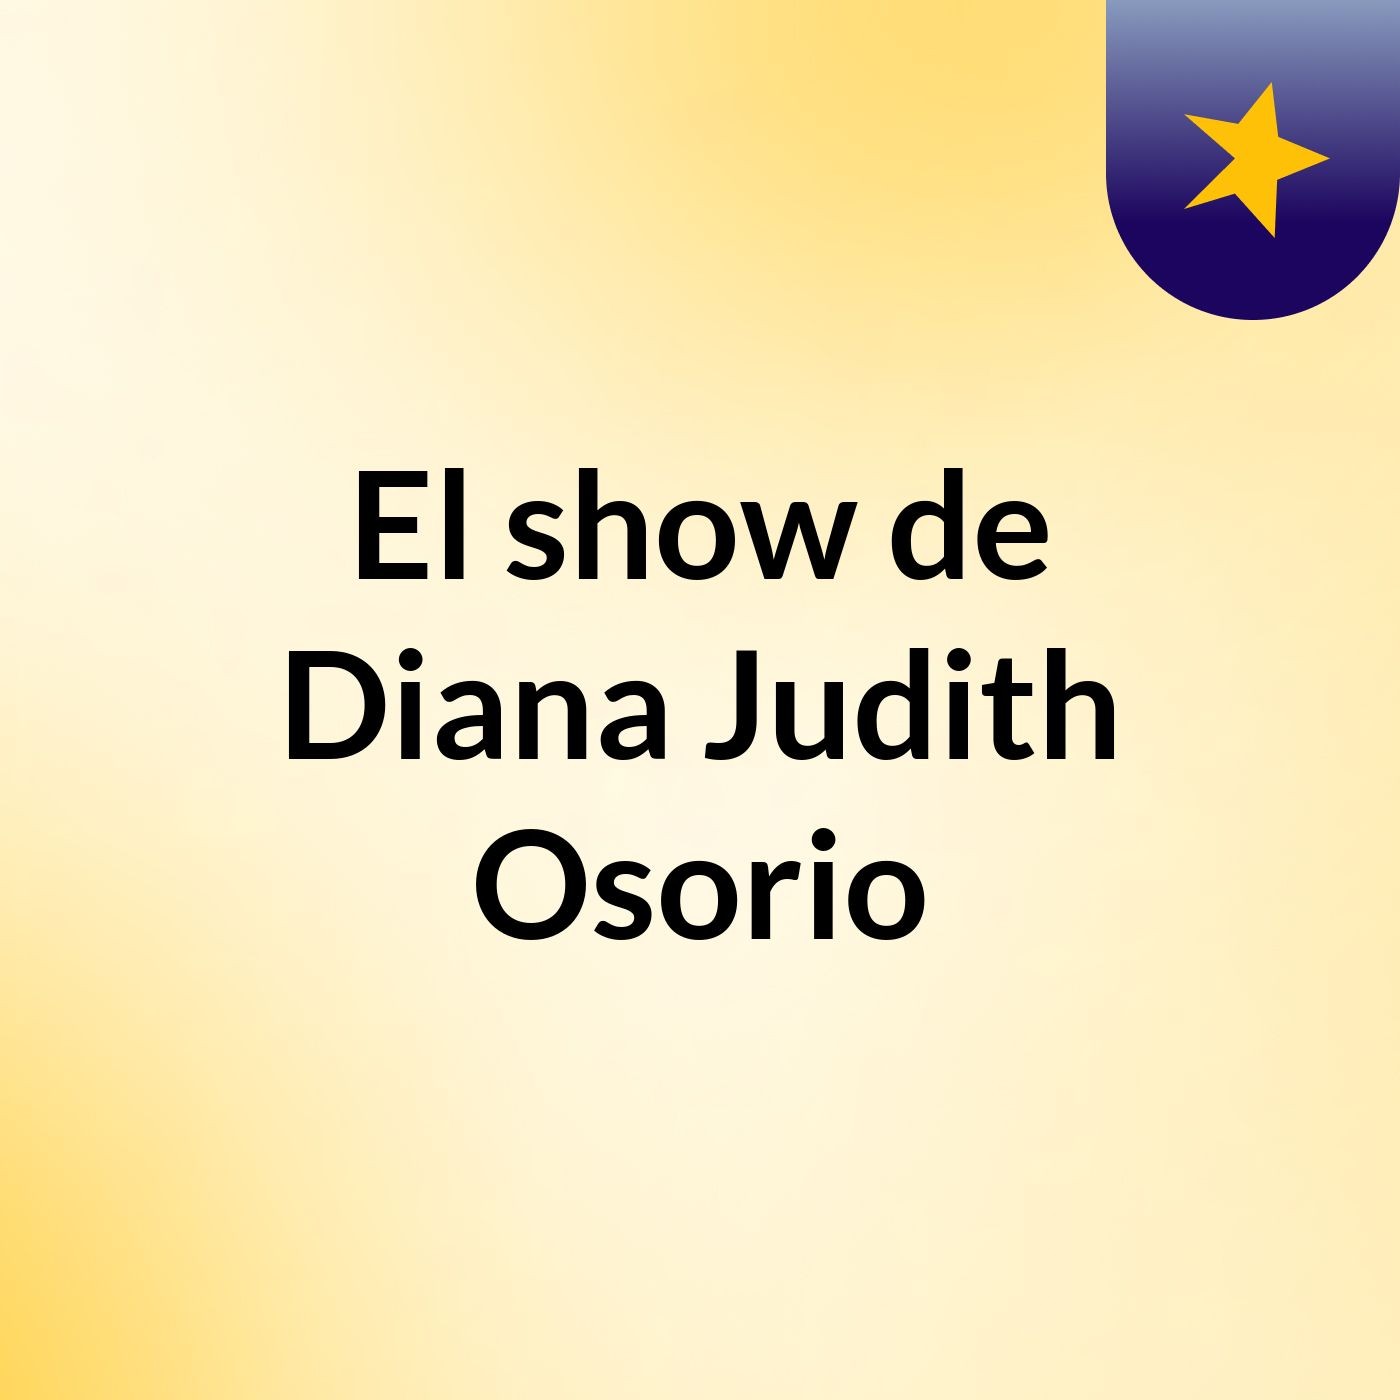 El show de Diana Judith Osorio